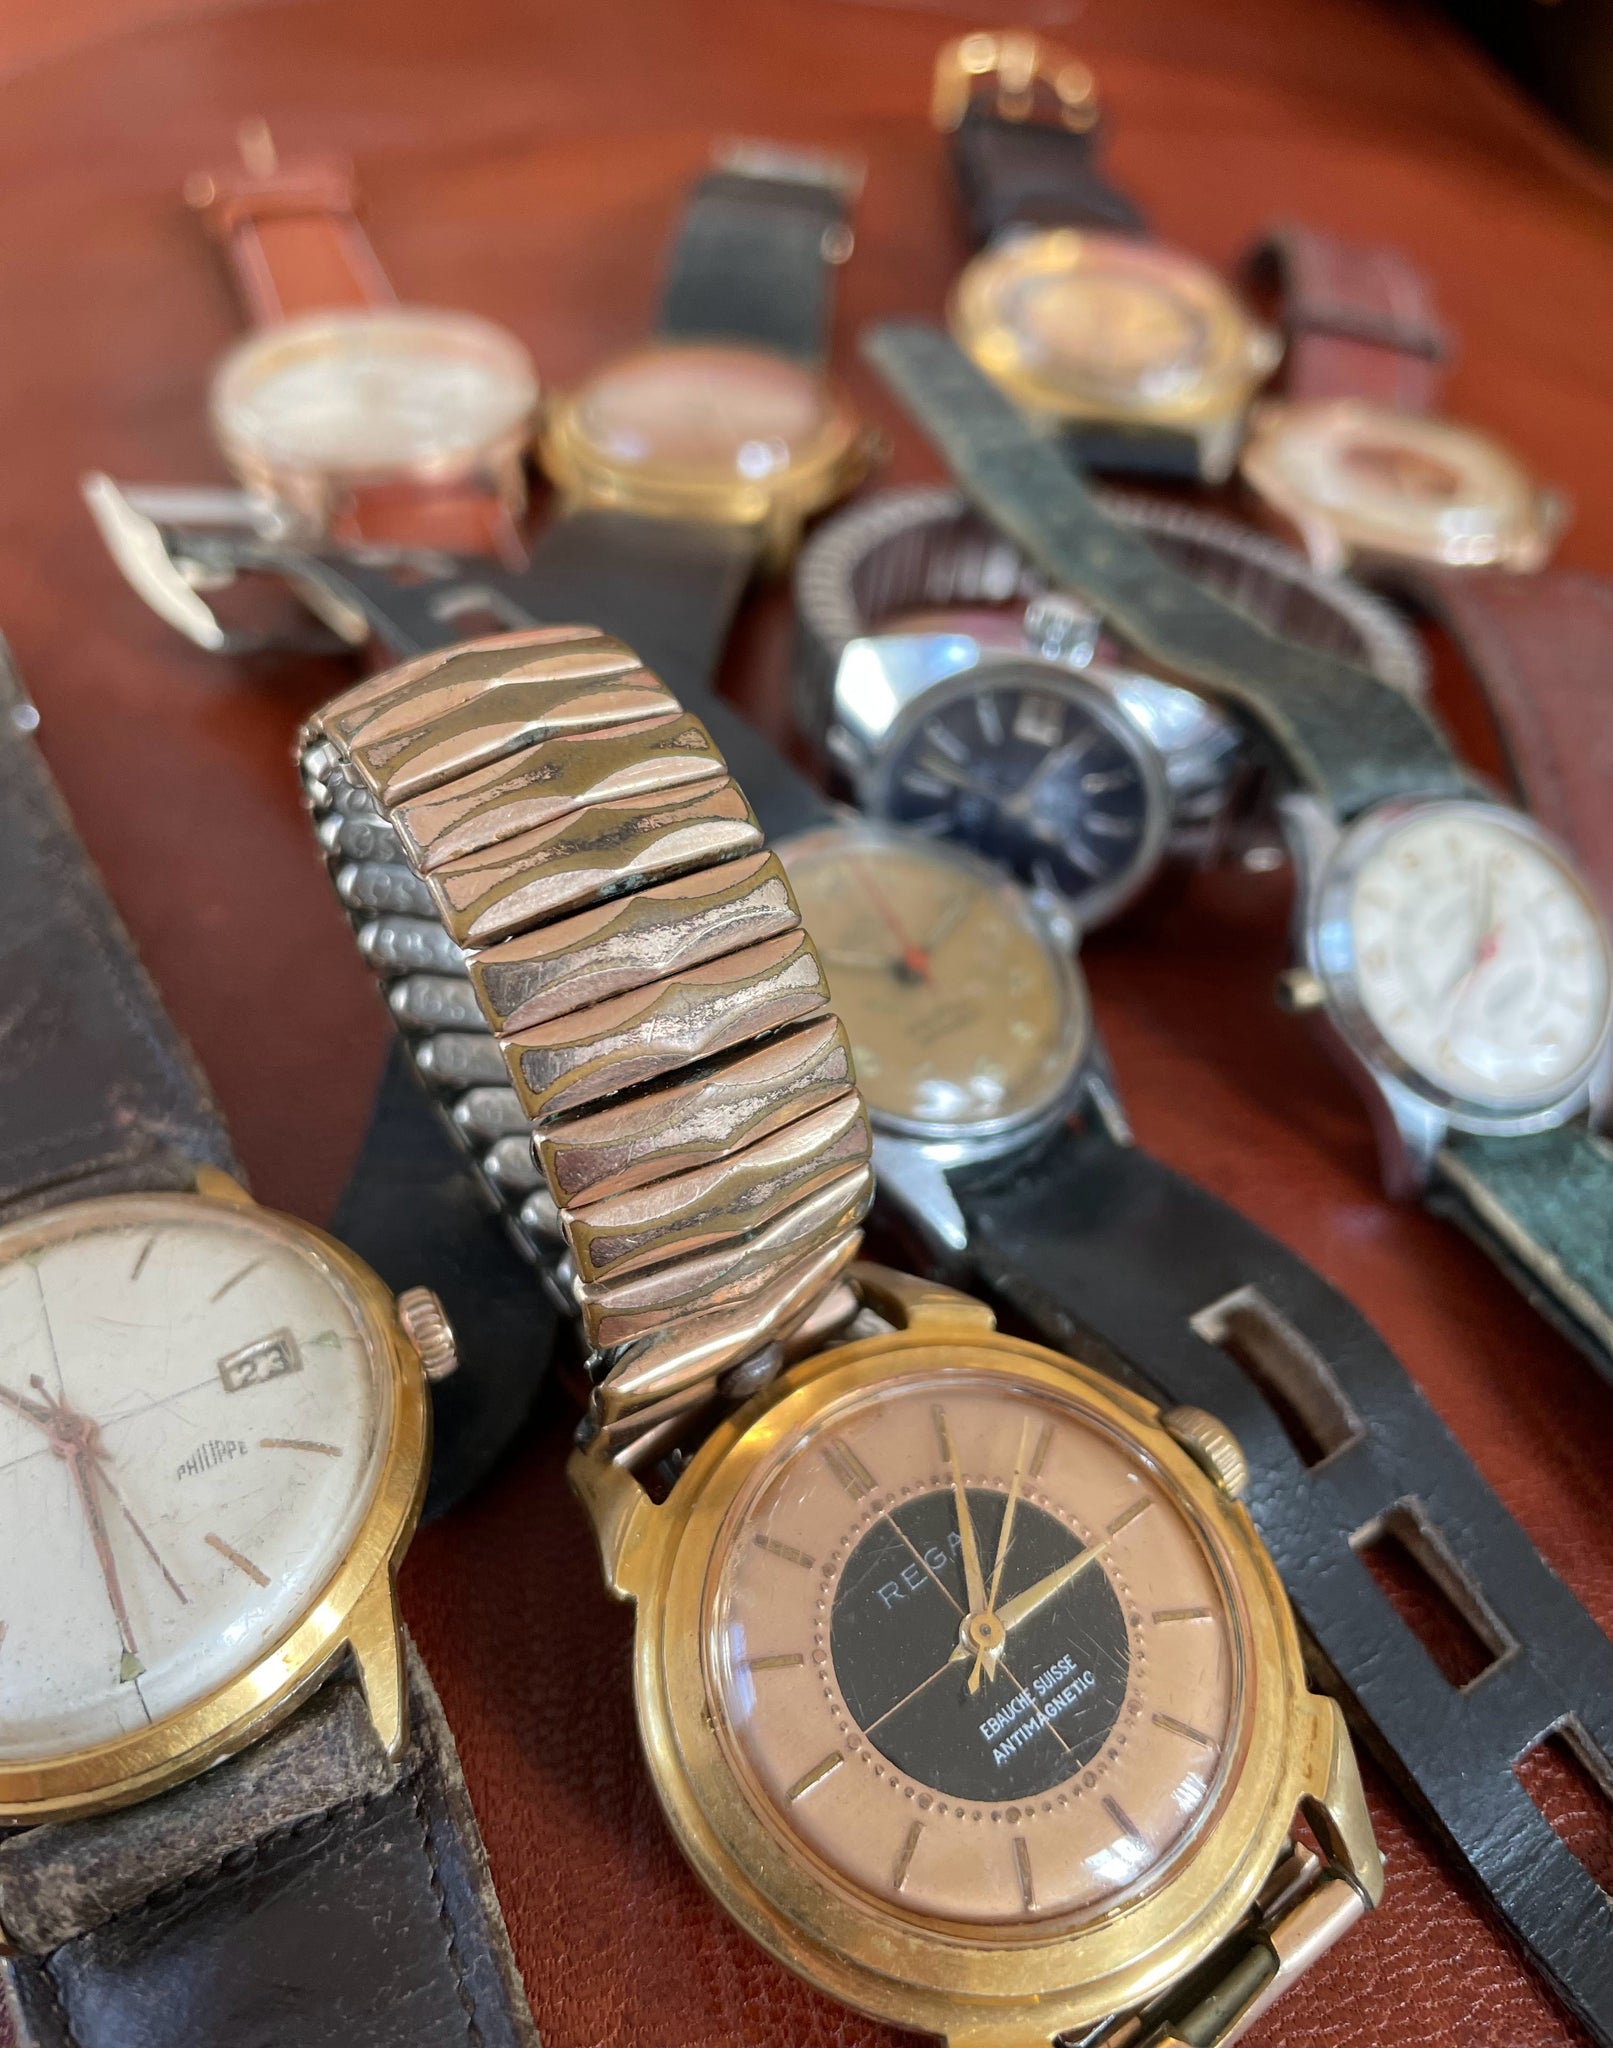 Lot de montres anciennes vintage dans leur jus de la remontrerie, horlogerie raisonnée. Au premier plan une montre mécanique française Philippe et une montre Rega.